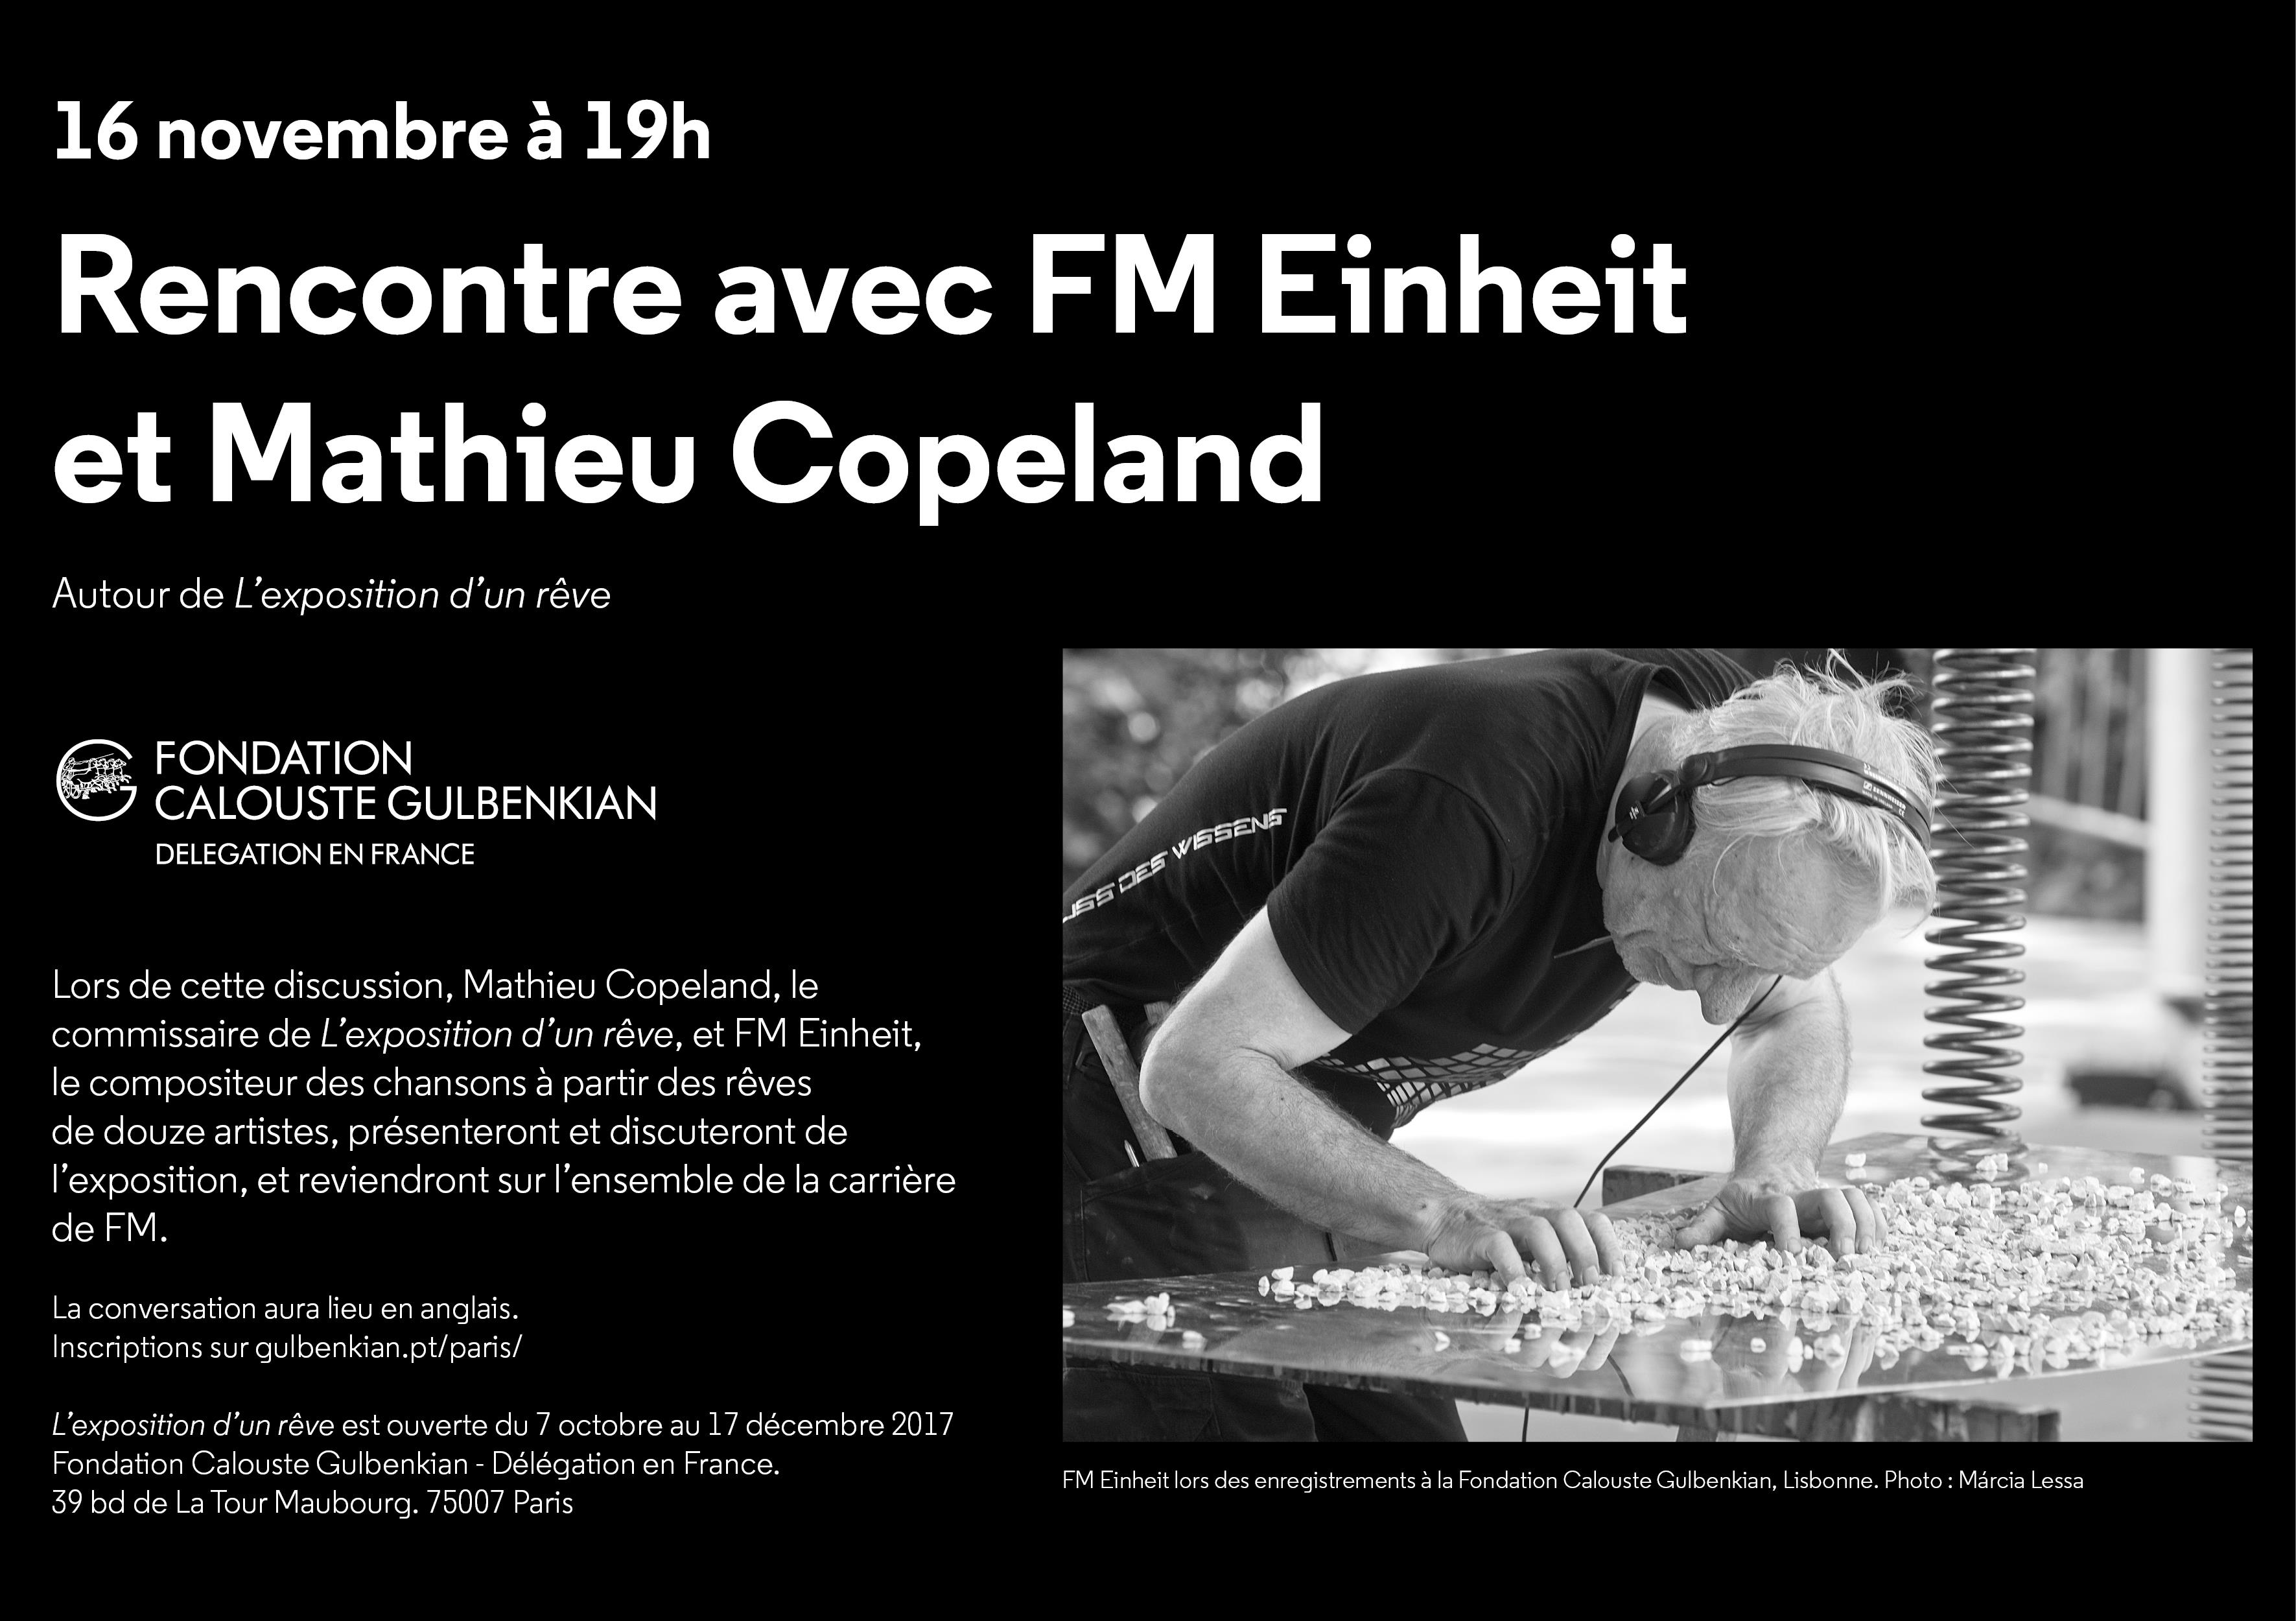 Rencontre avec FM Einheit et Mathieu Copeland